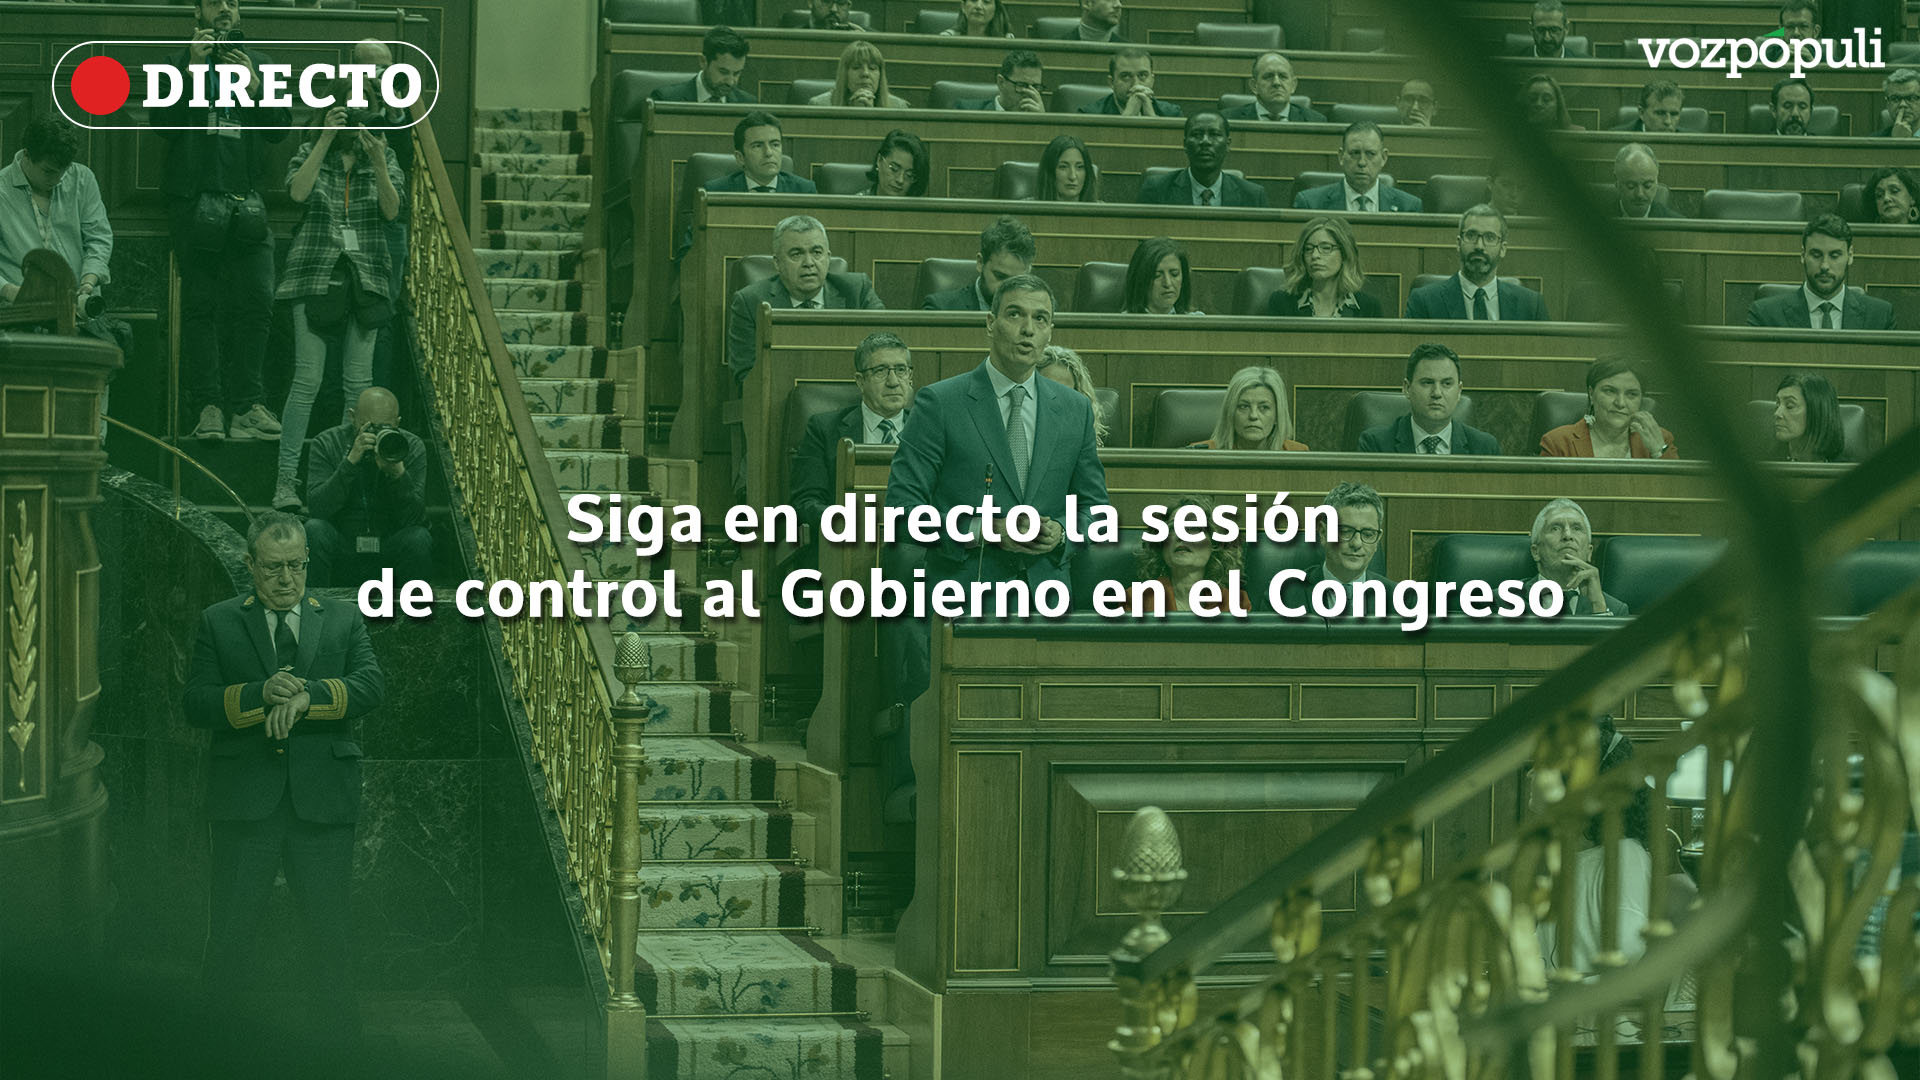 La comparecencia de Pedro Sánchez y la sesión de control al Gobierno, en directo